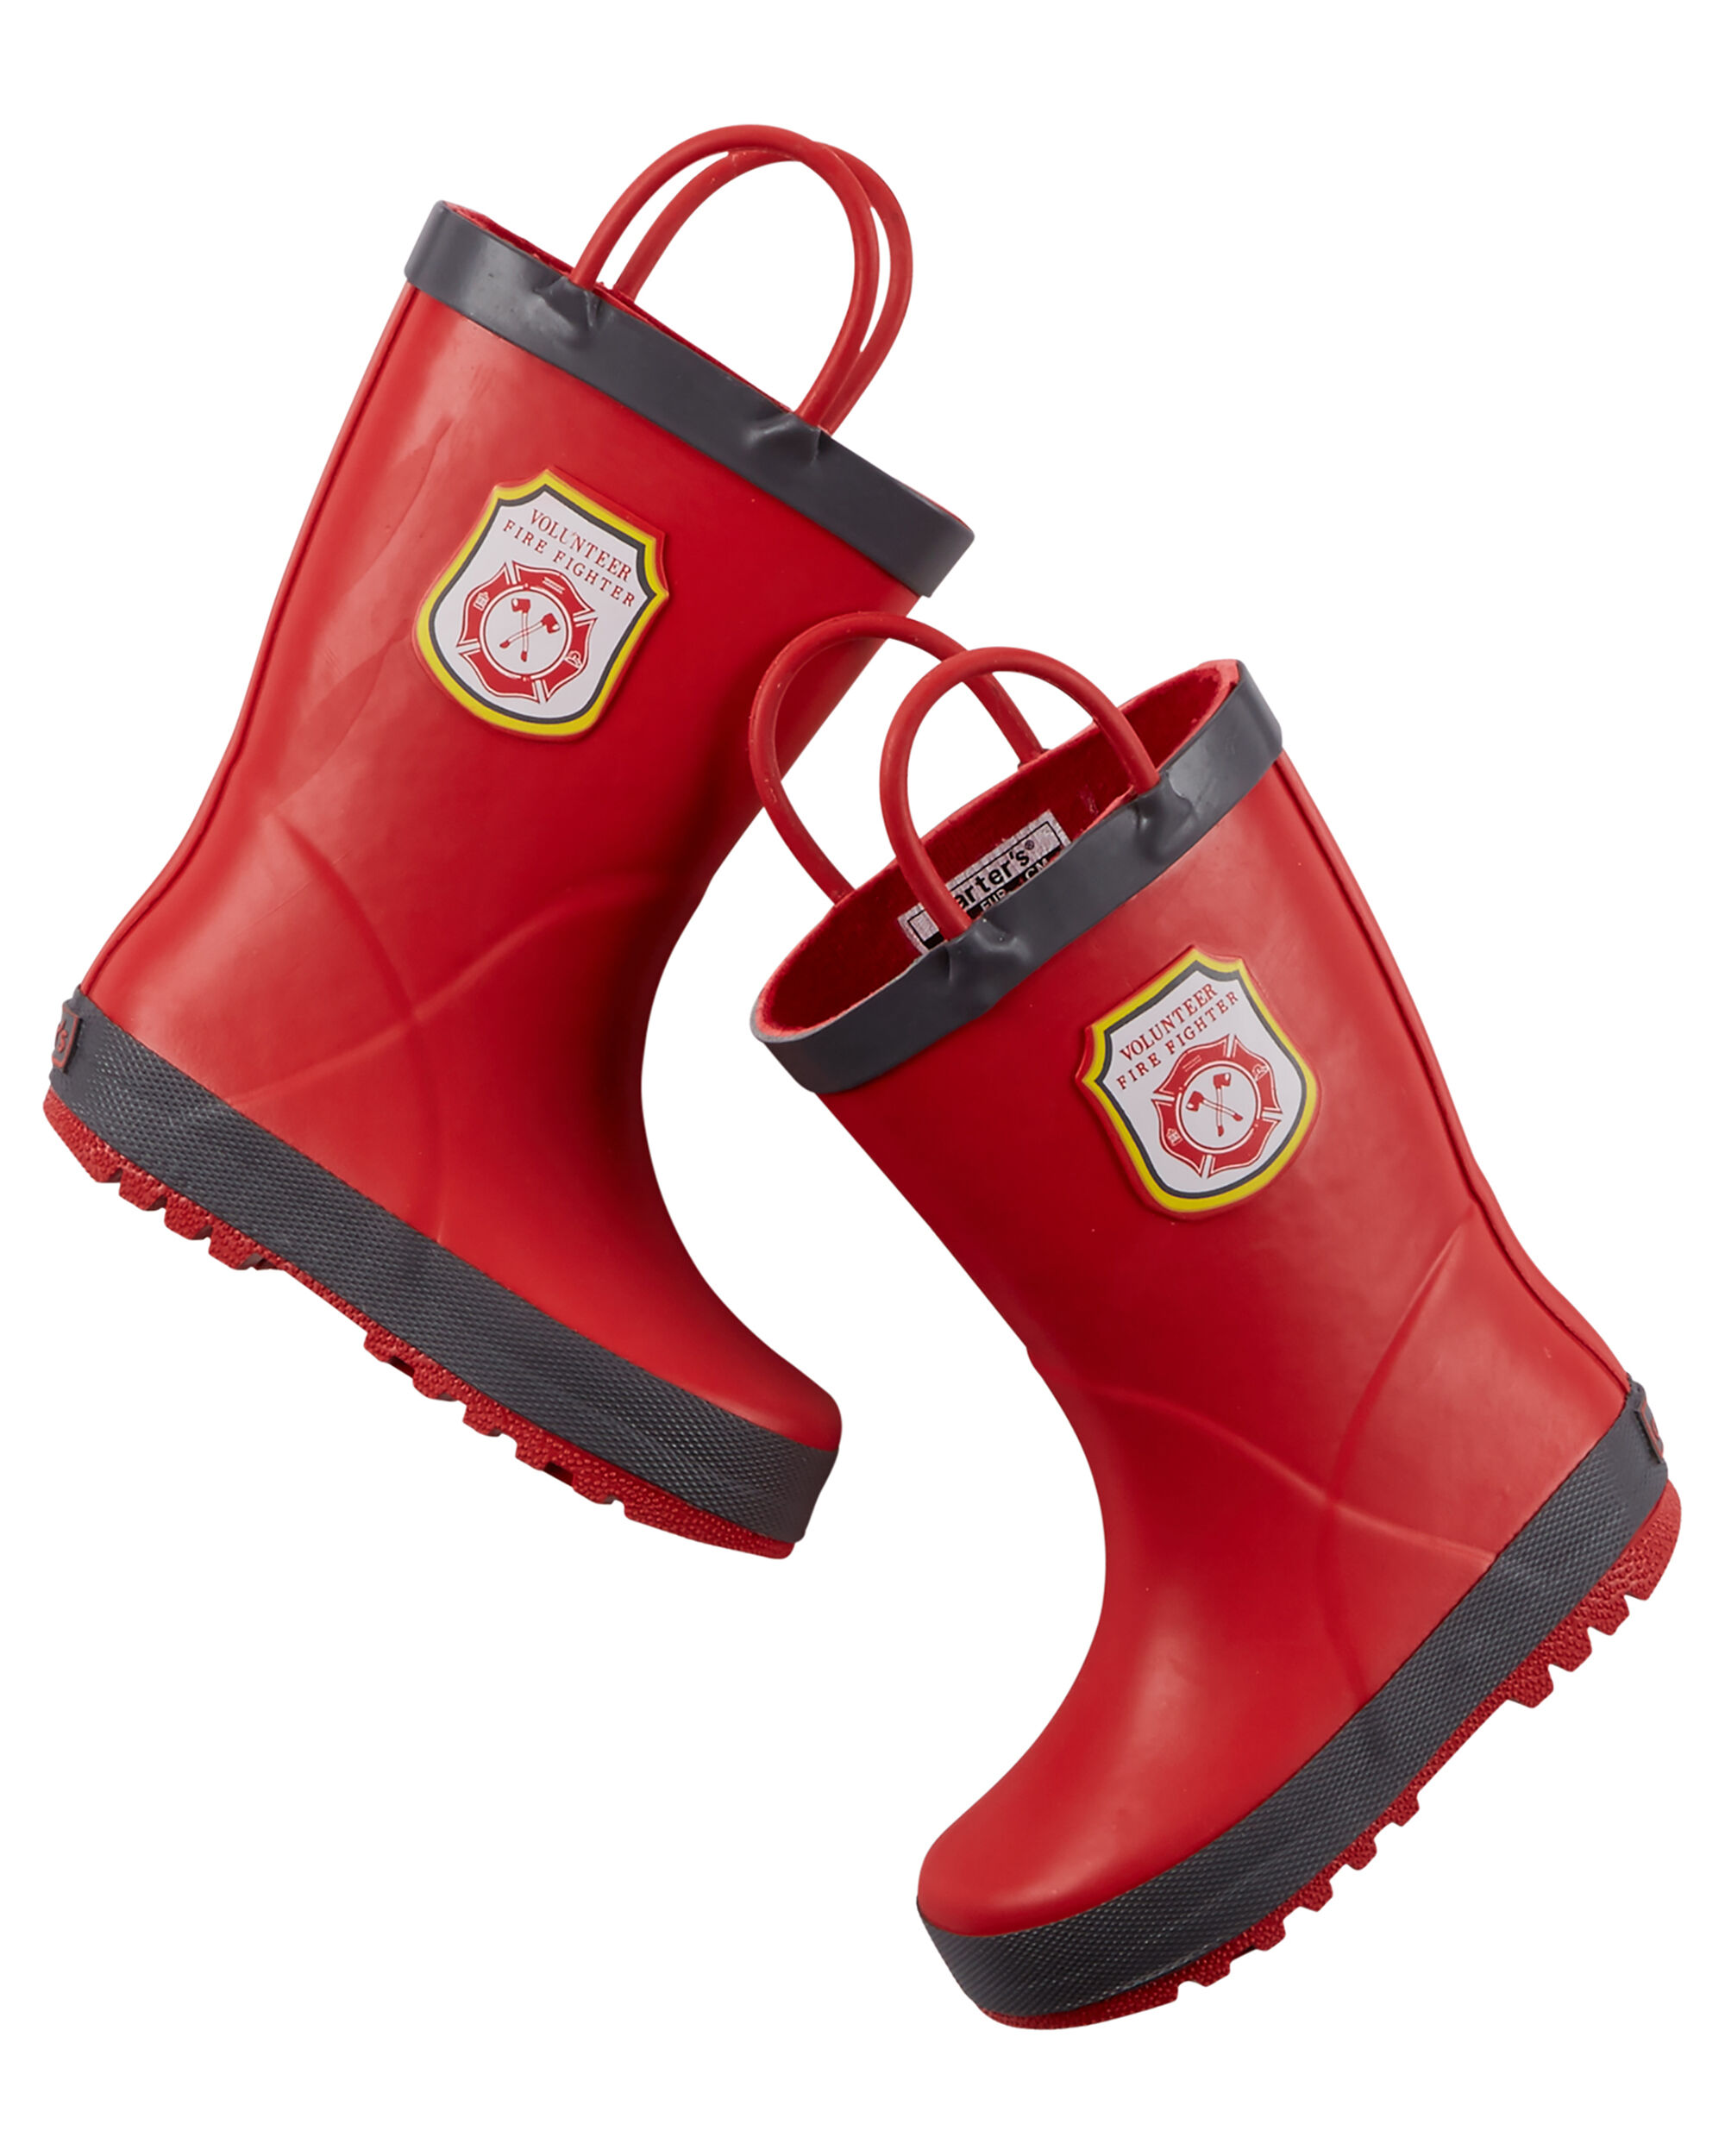 Carter's Fireman Rain Boots | carters.com